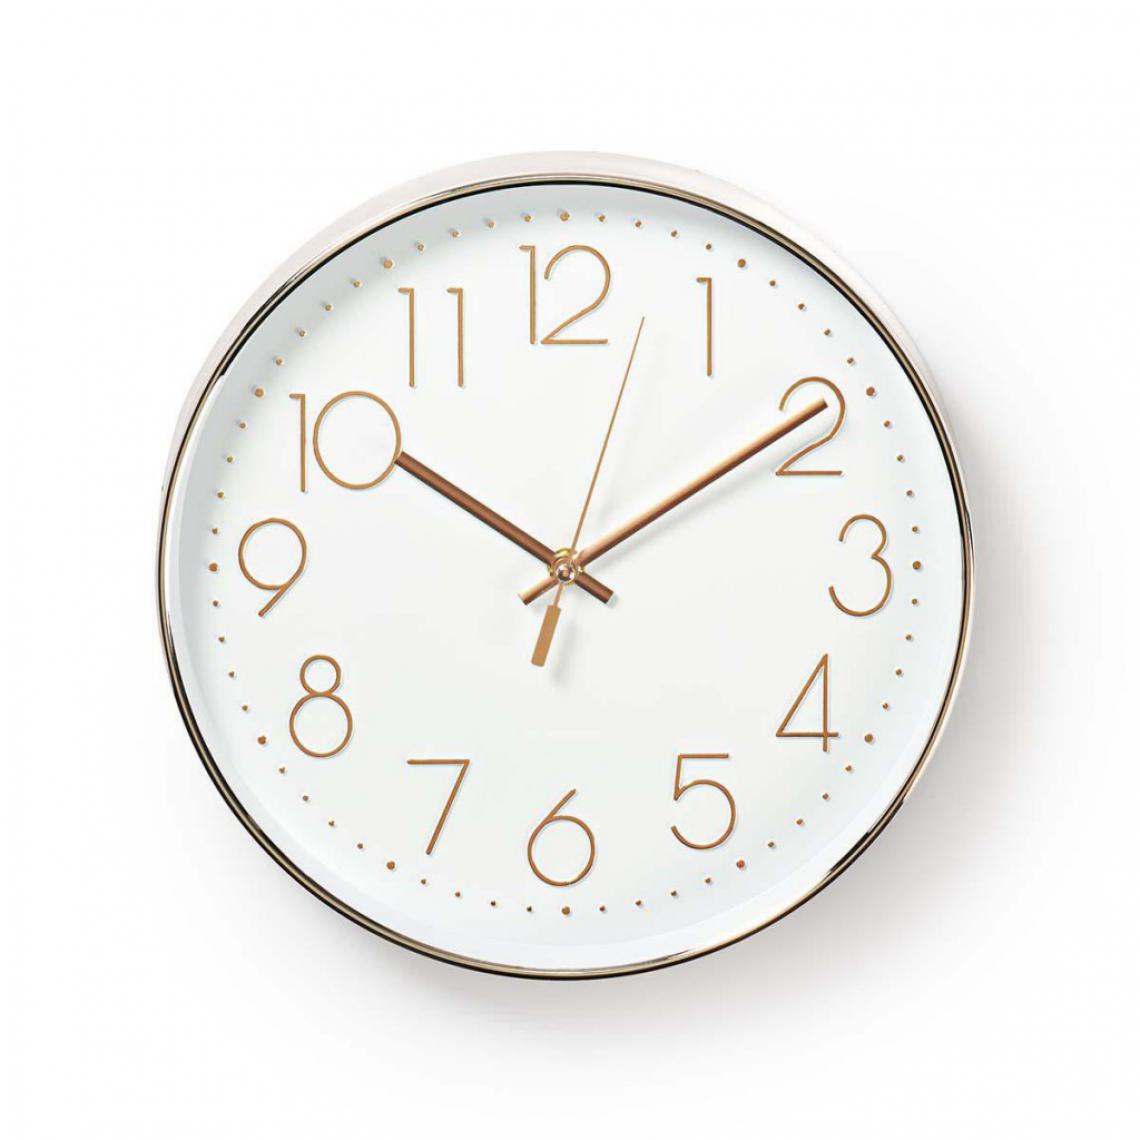 Alpexe - Horloge Murale Circulaire | 30 cm de Diamètre | Blanc et Métallique - Horloges, pendules